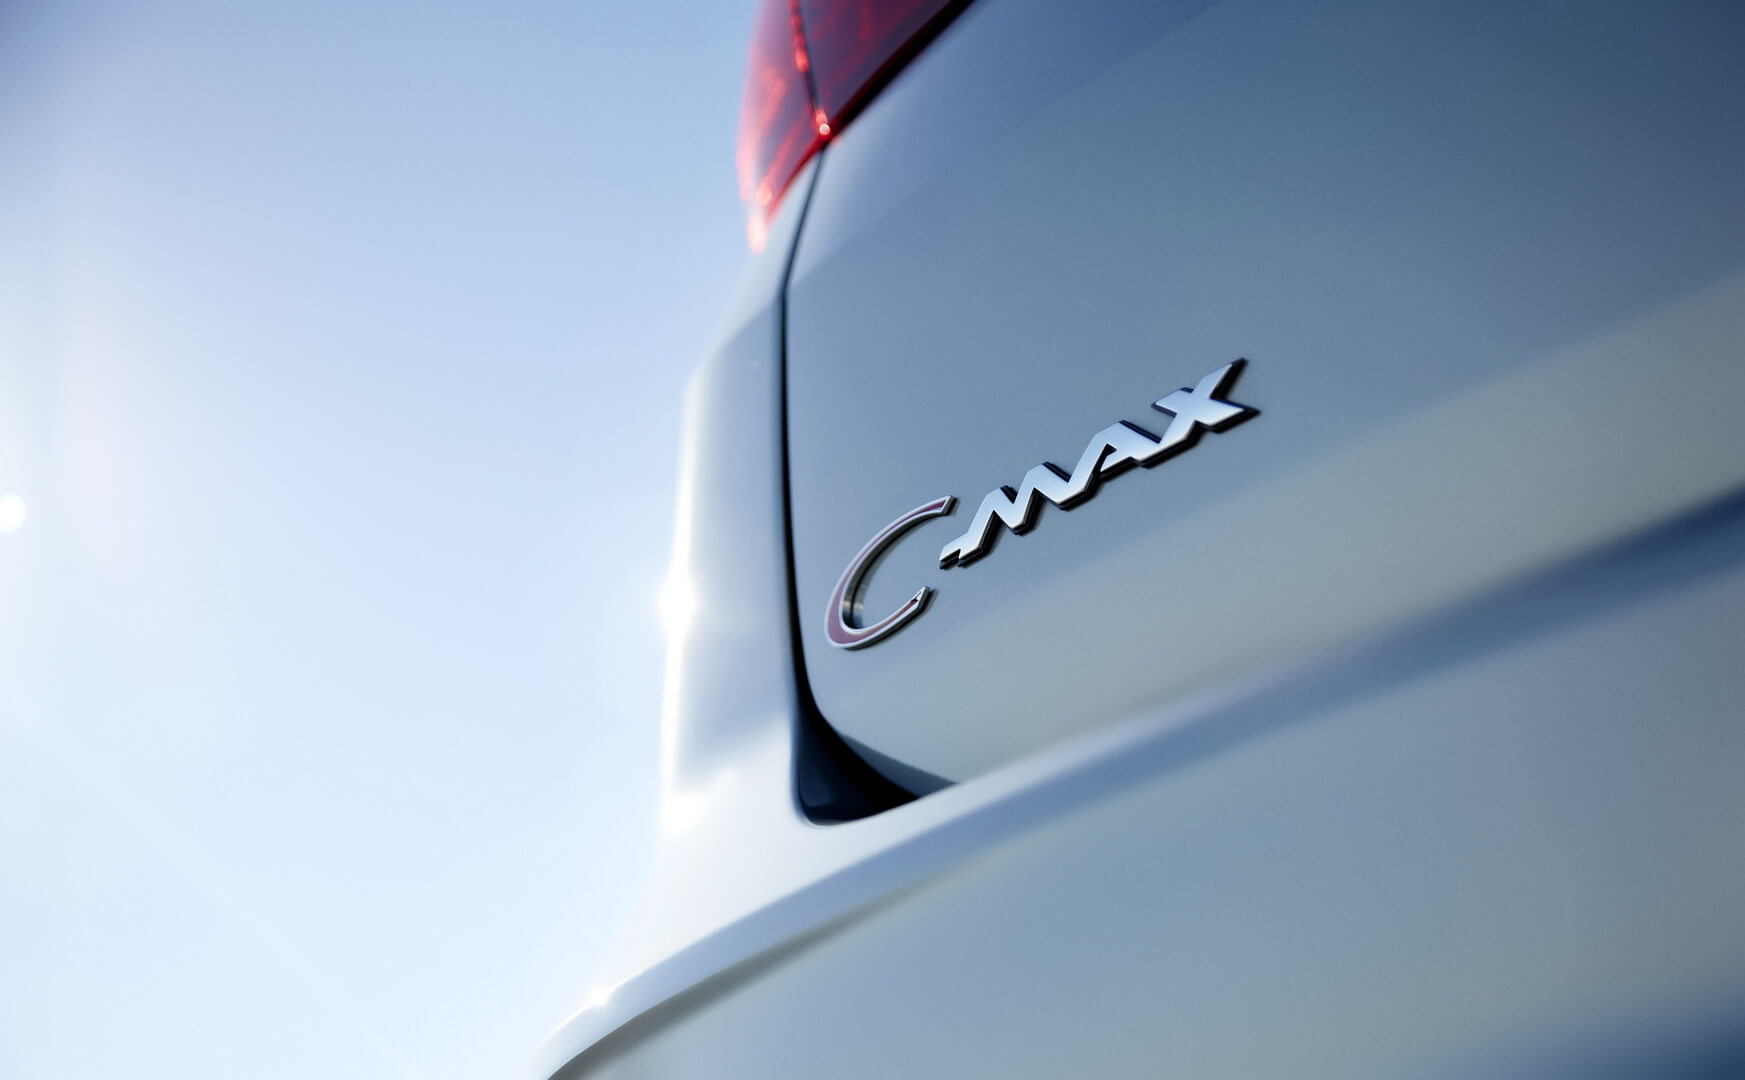 Фотография экоавто Ford C-Max Hybrid SE - фото 8